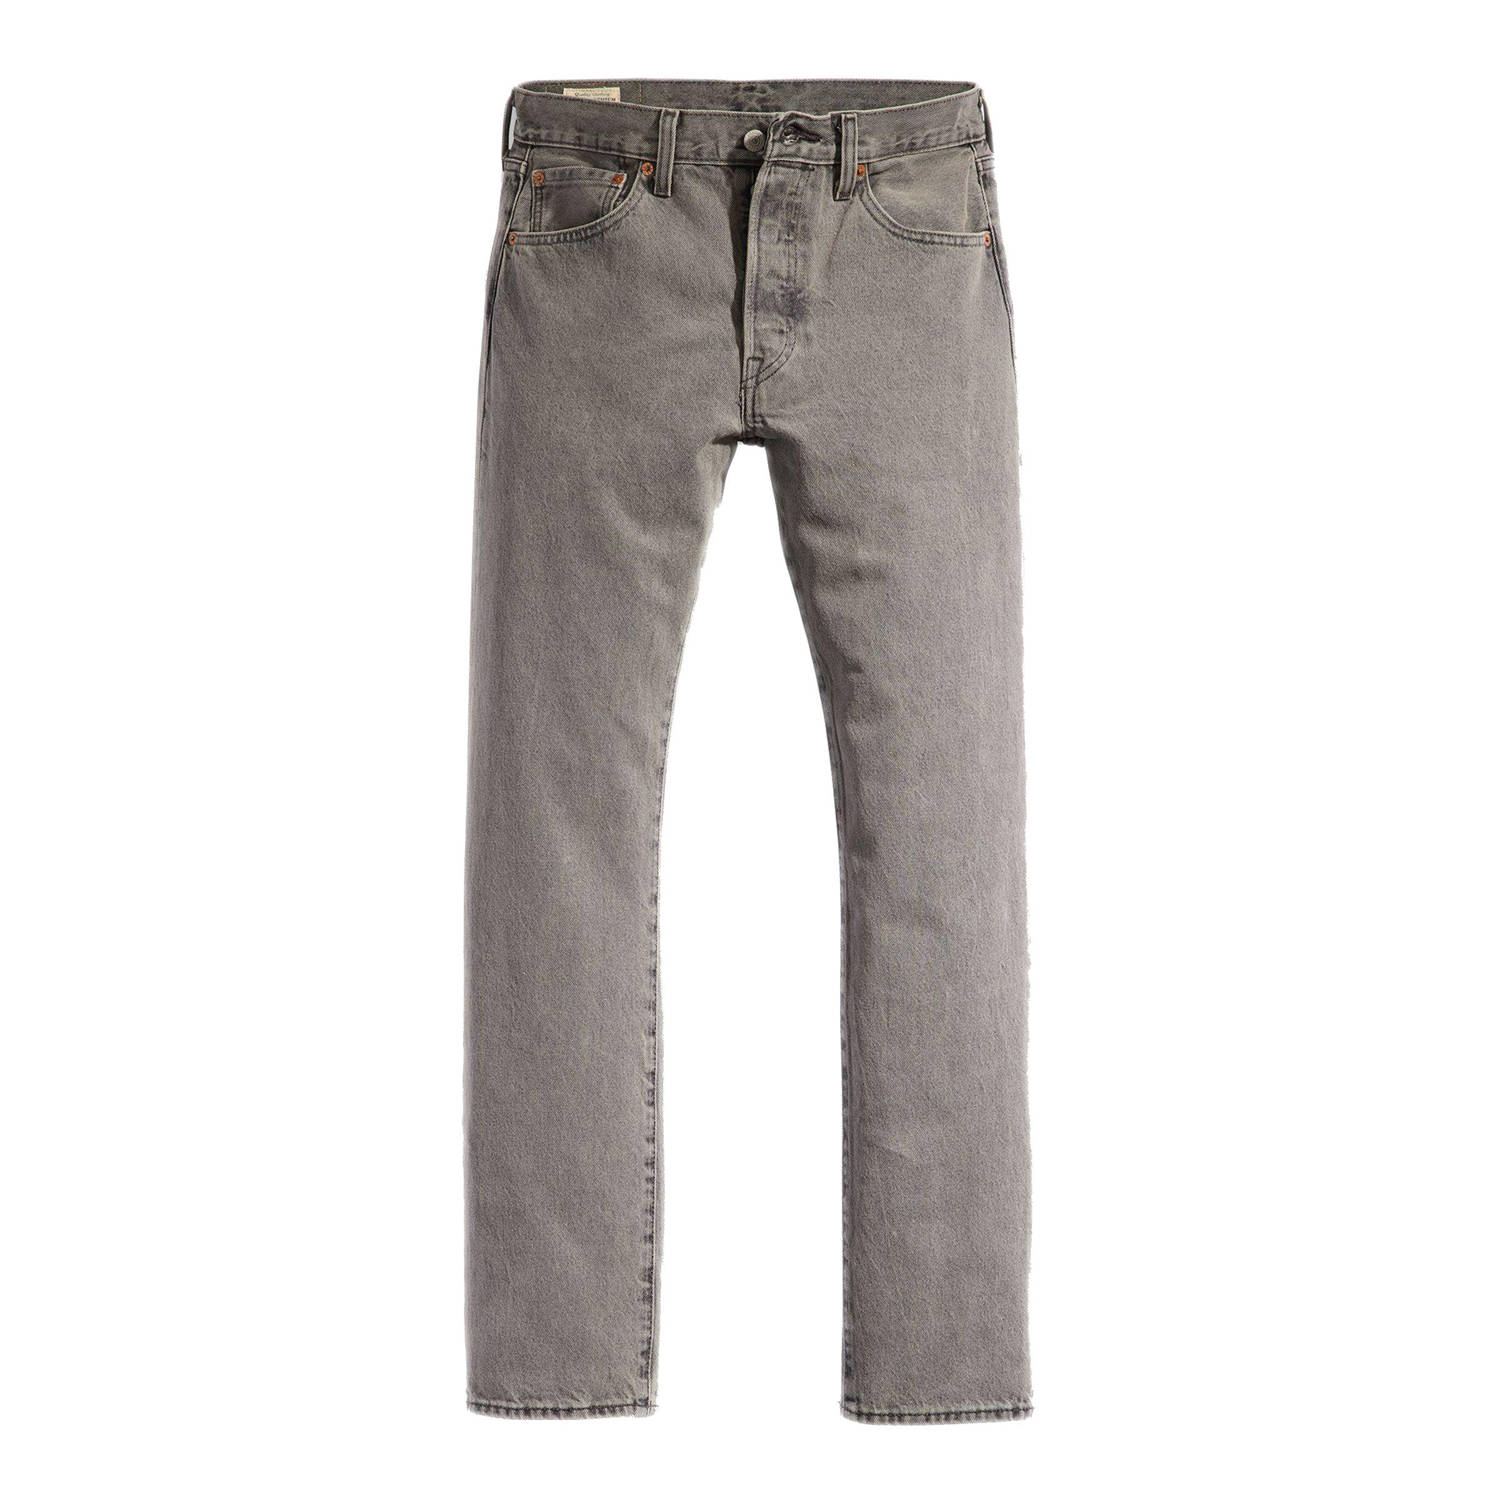 Levi's 501 straight fit jeans grijs